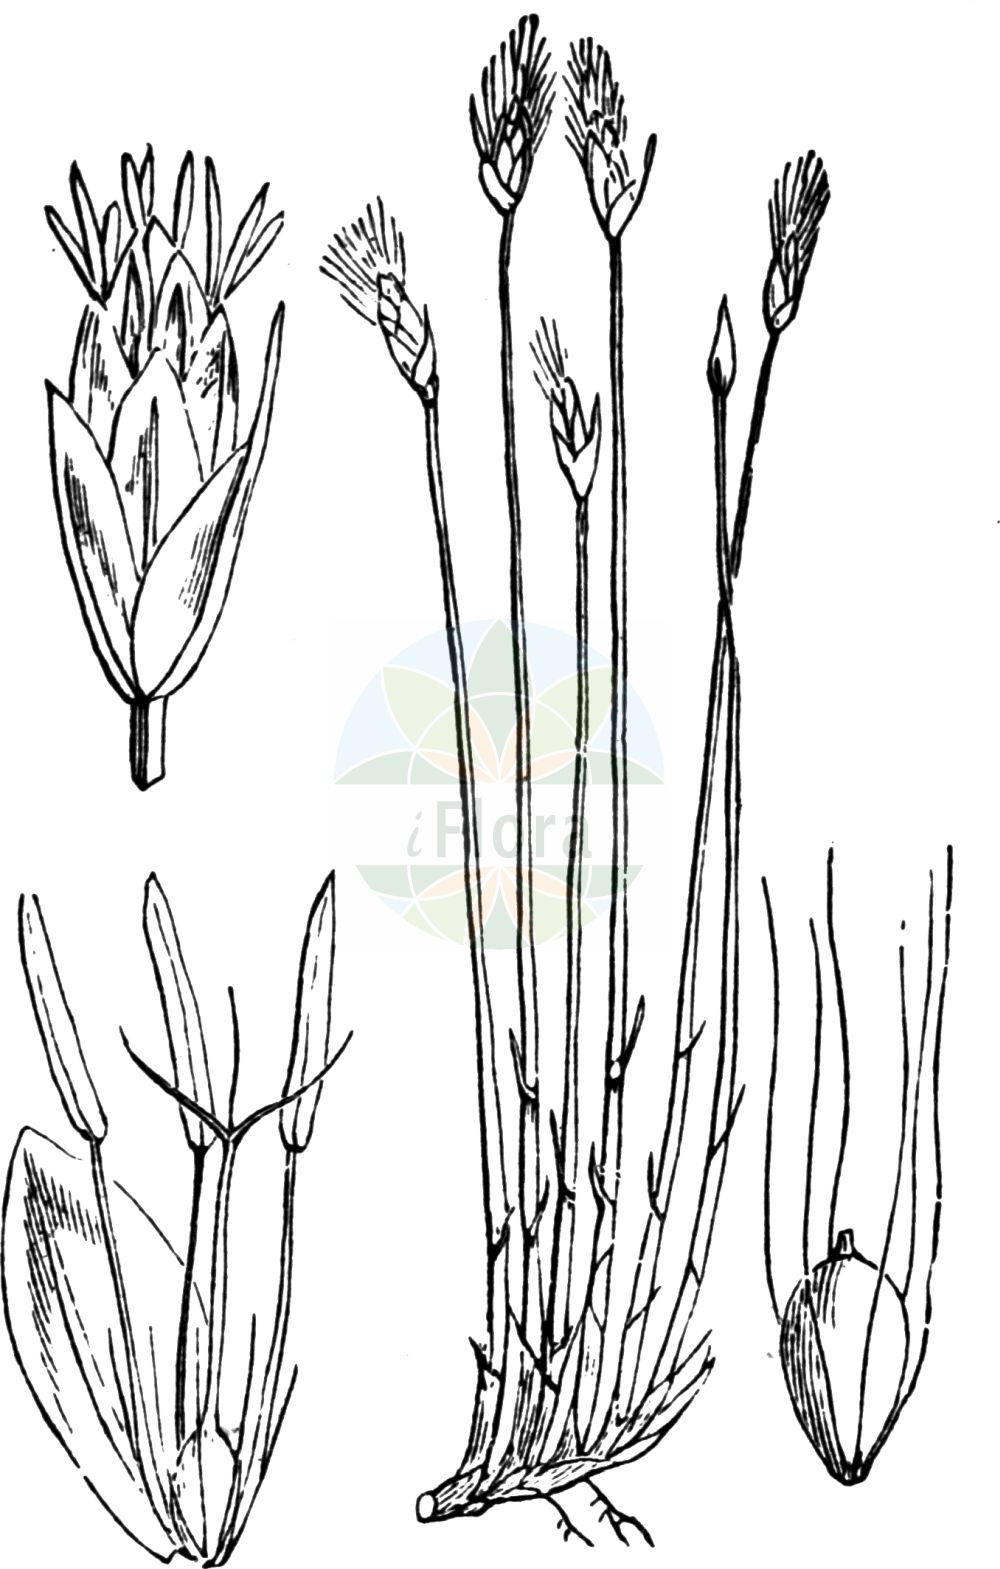 Historische Abbildung von Trichophorum alpinum (Alpen-Rasenbinse - Cotton Deergrass). Das Bild zeigt Blatt, Bluete, Frucht und Same. ---- Historical Drawing of Trichophorum alpinum (Alpen-Rasenbinse - Cotton Deergrass). The image is showing leaf, flower, fruit and seed.(Trichophorum alpinum,Alpen-Rasenbinse,Cotton Deergrass,Eriophorum alpinum,Scirpus hudsonianus,Trichophorum alpinum,Alpen-Rasenbinse,Alpen-Haarsimse,Alpen-Wollgras,Cotton Deergrass,Alpine Deergrass,Alpine Bulrush,Trichophorum,Rasenbinse,Bulrush,Cyperaceae,Sauergräser,Sedge family,Blatt,Bluete,Frucht,Same,leaf,flower,fruit,seed,Fitch et al. (1880))